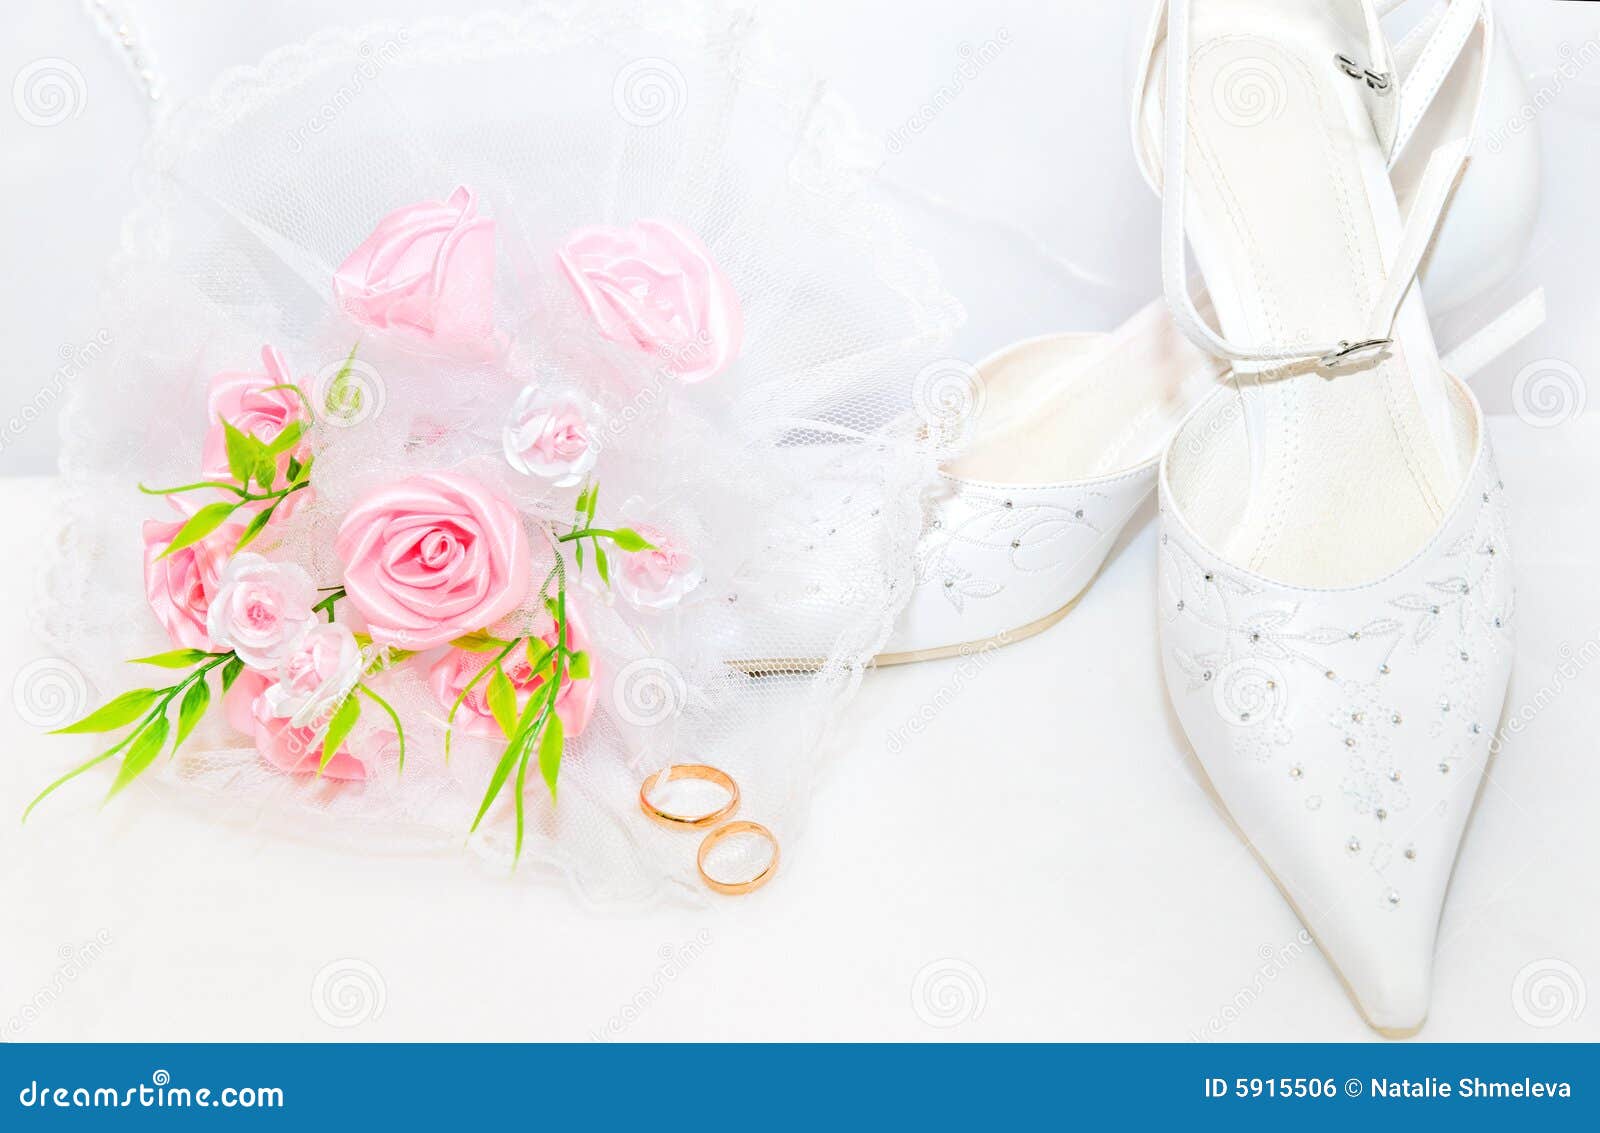 Wedding Background Royalty Free Stock Image - Image: 5915506